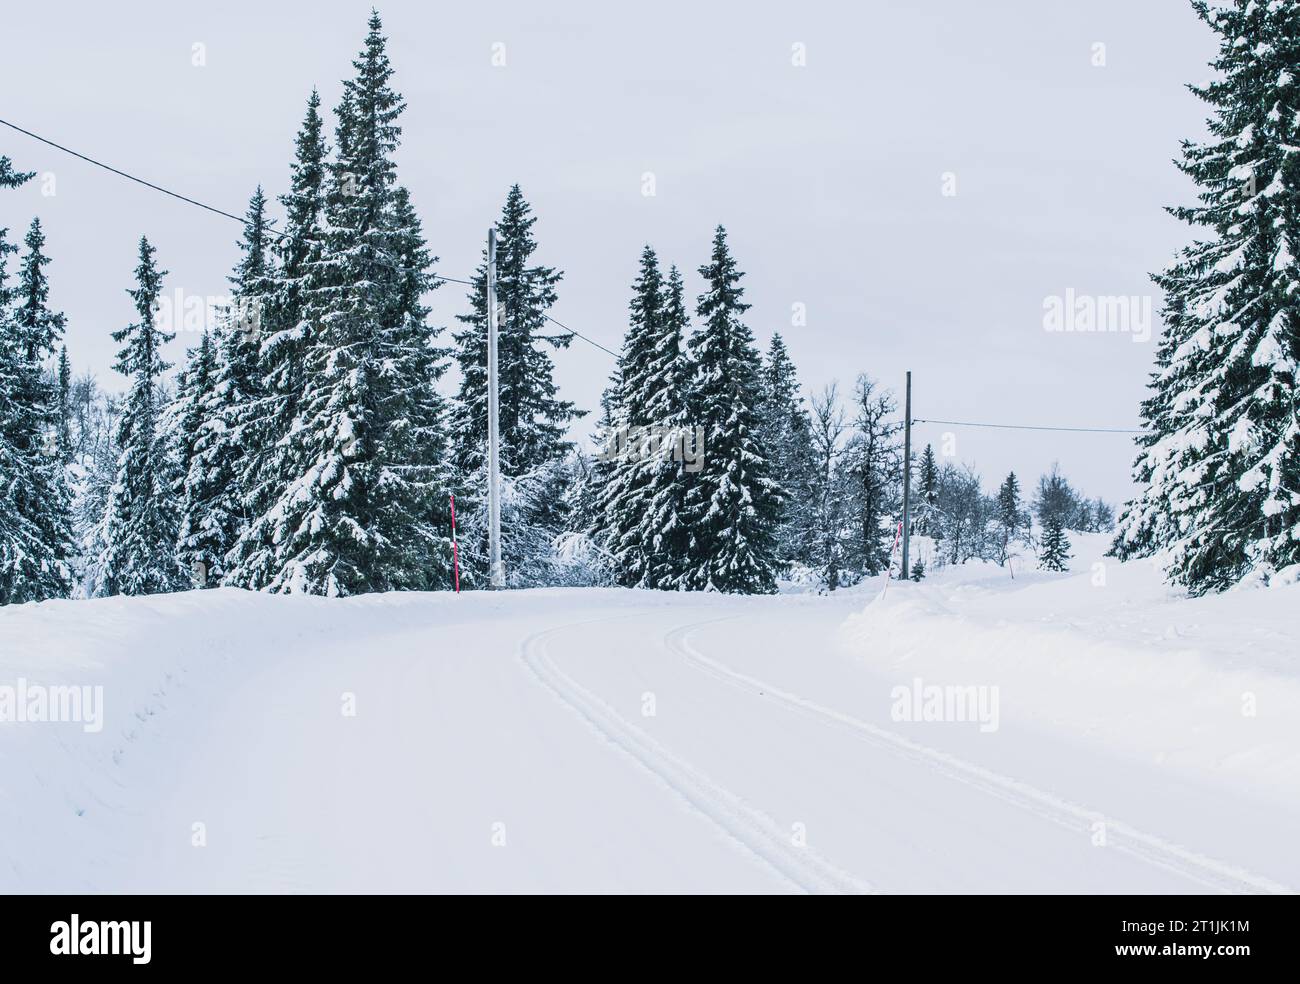 Route d'hiver tranquille à travers une forêt de pins enneigés en Suède. Banque D'Images